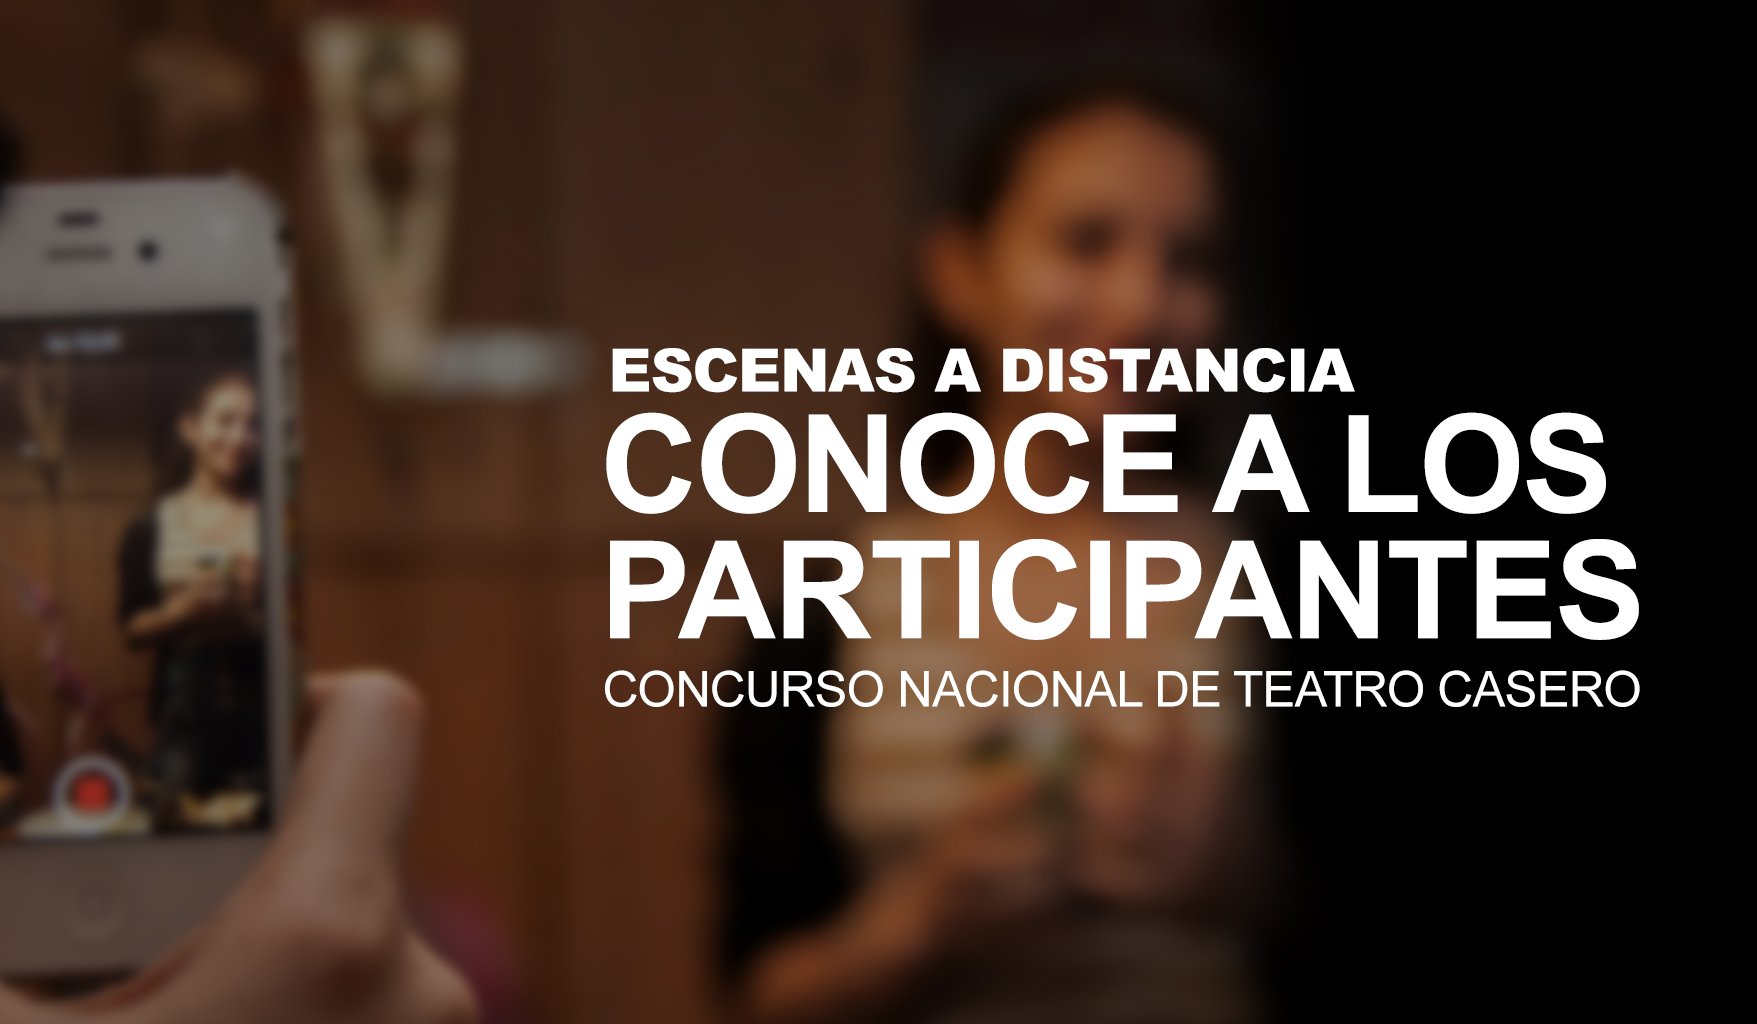 1757px x 1024px - Teatro en video - Combo parientes - Teatro UNAM